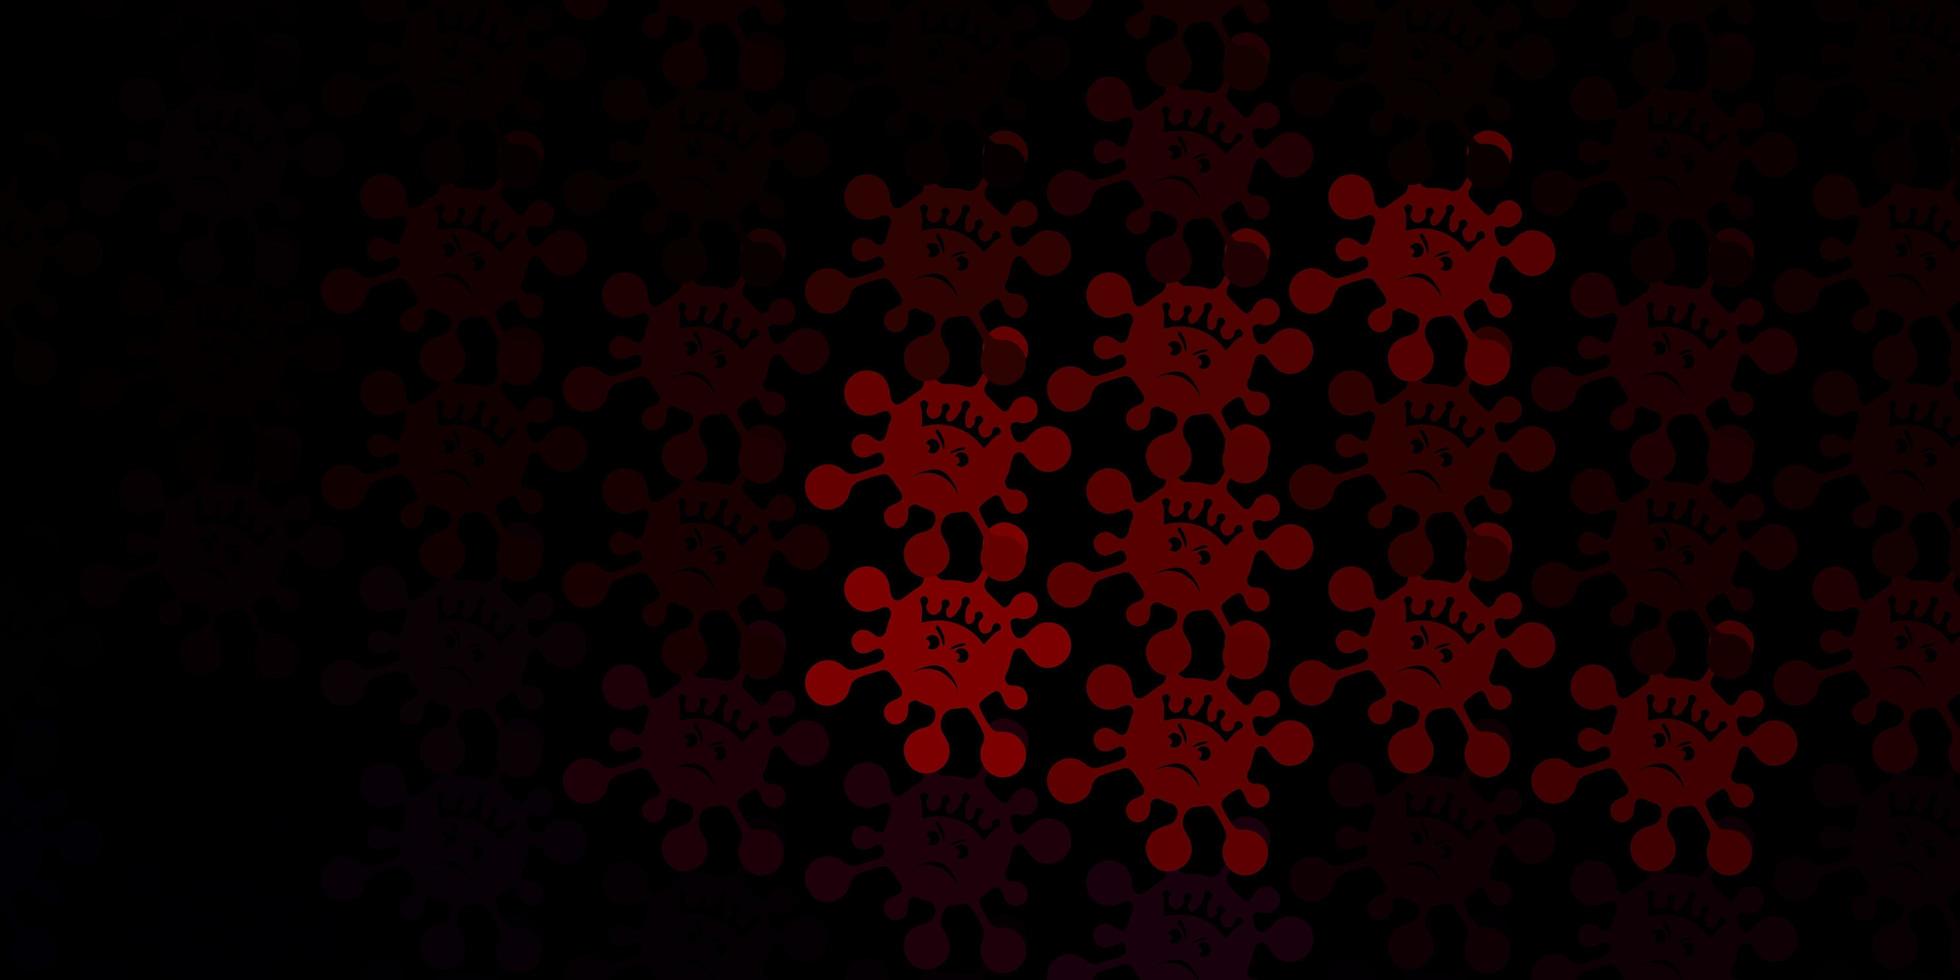 trama vettoriale rosso scuro con simboli di malattia.